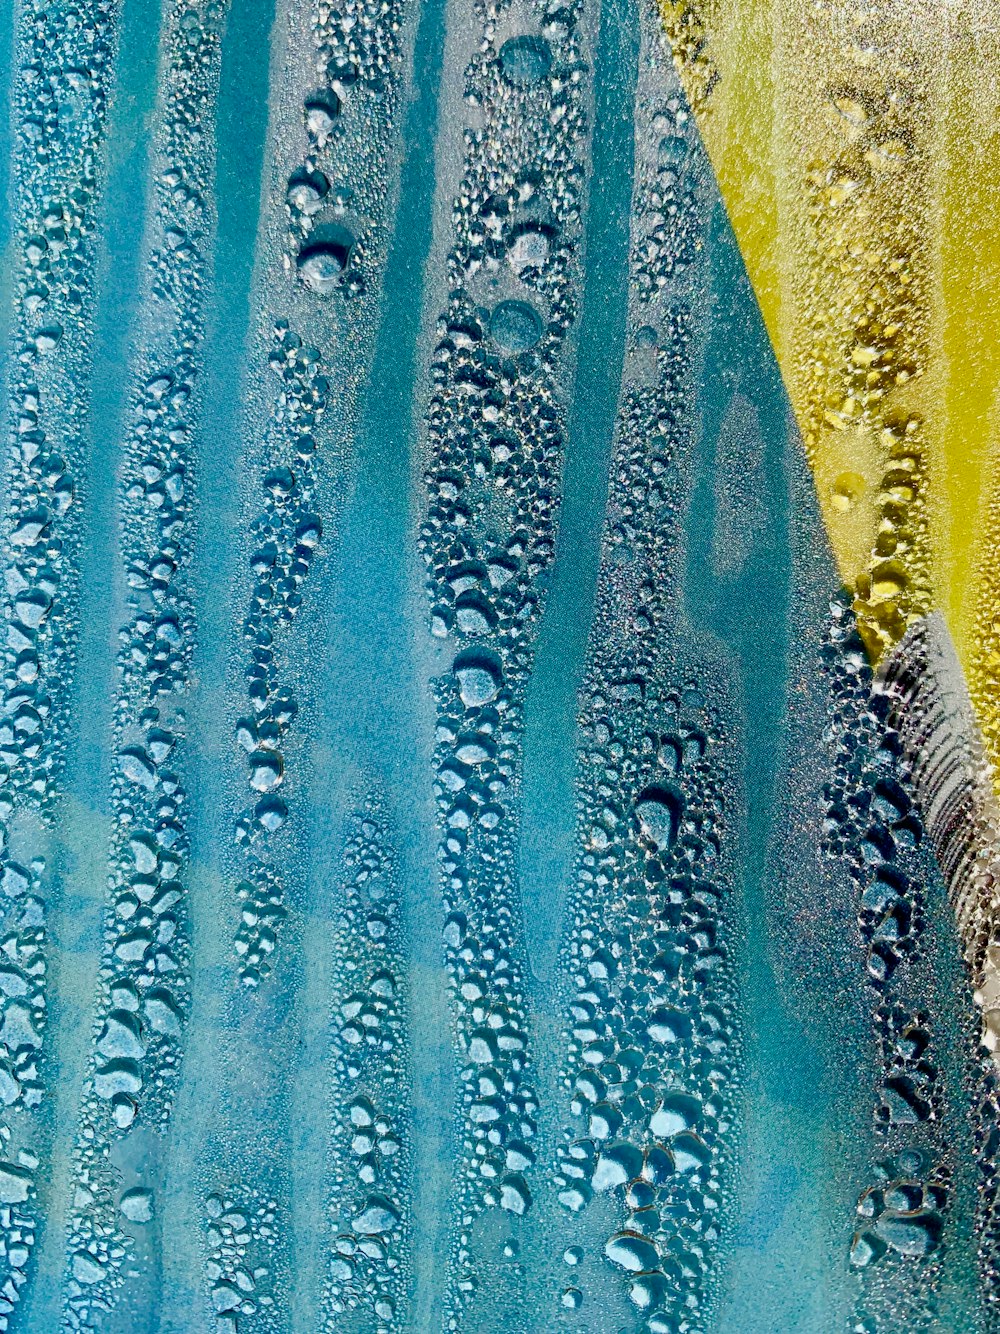 ein blau-gelbes Gemälde mit Wassertropfen darauf